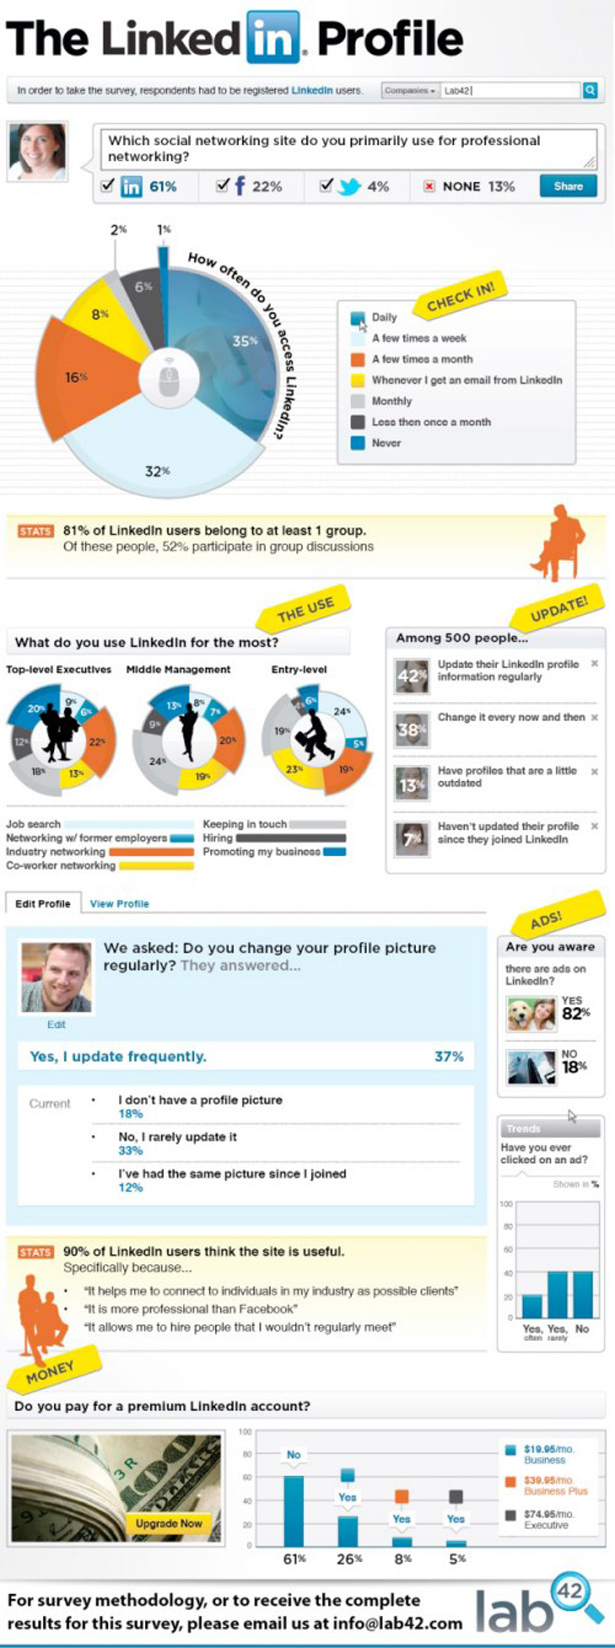 linkedin-infographic4.jpg